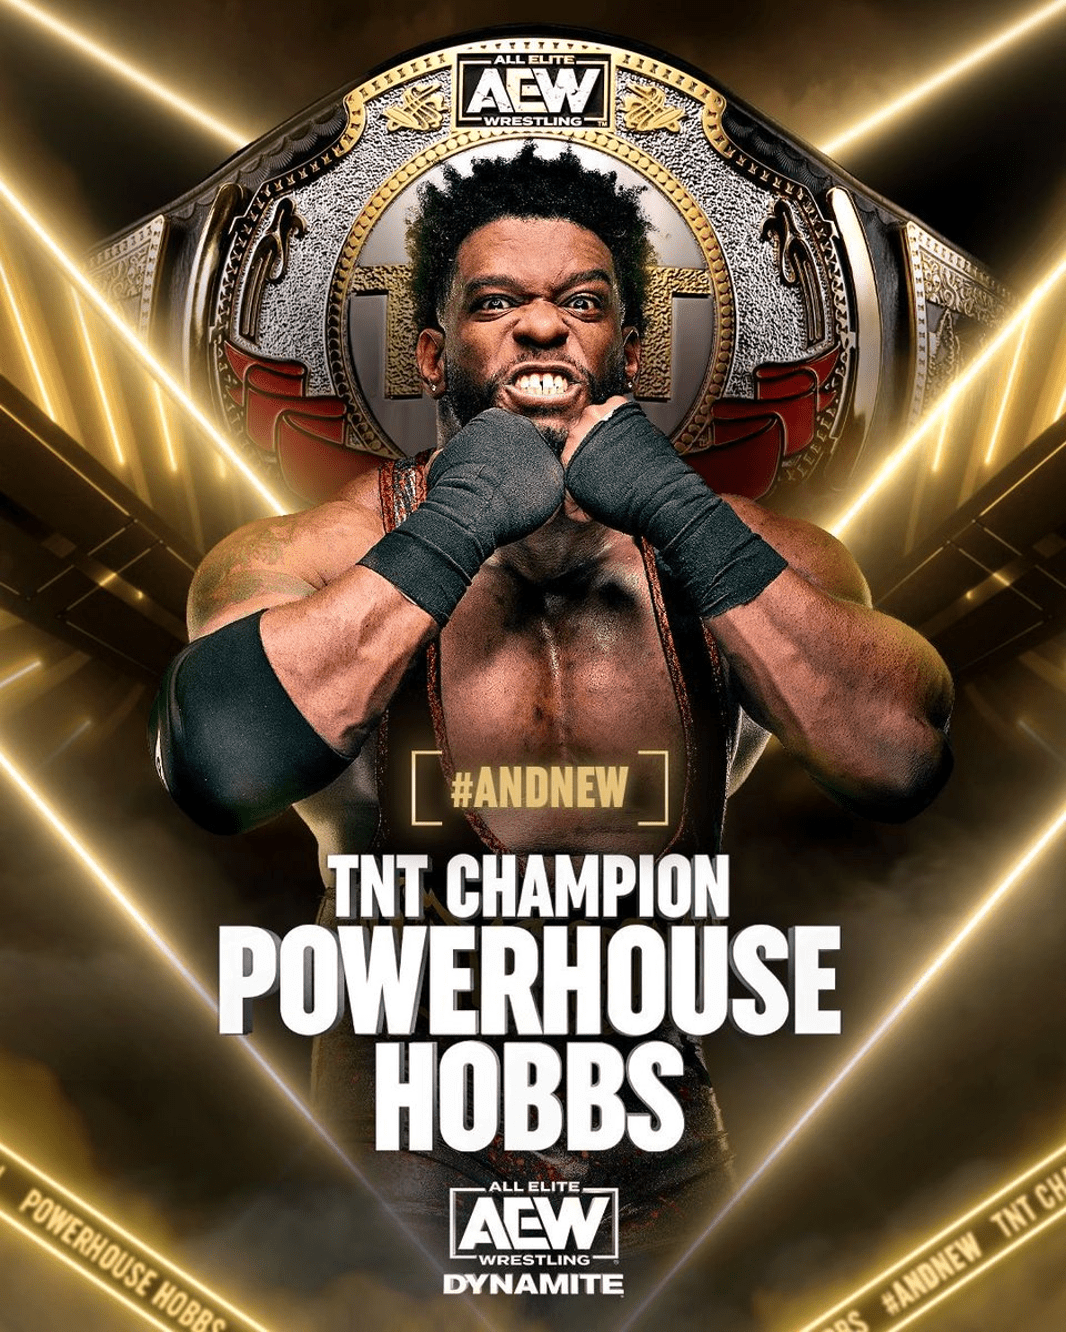 AEW Dynamite ngày 8 tháng 3 năm 2023 #AndNew TNT Champion Powerhouse Hobbs